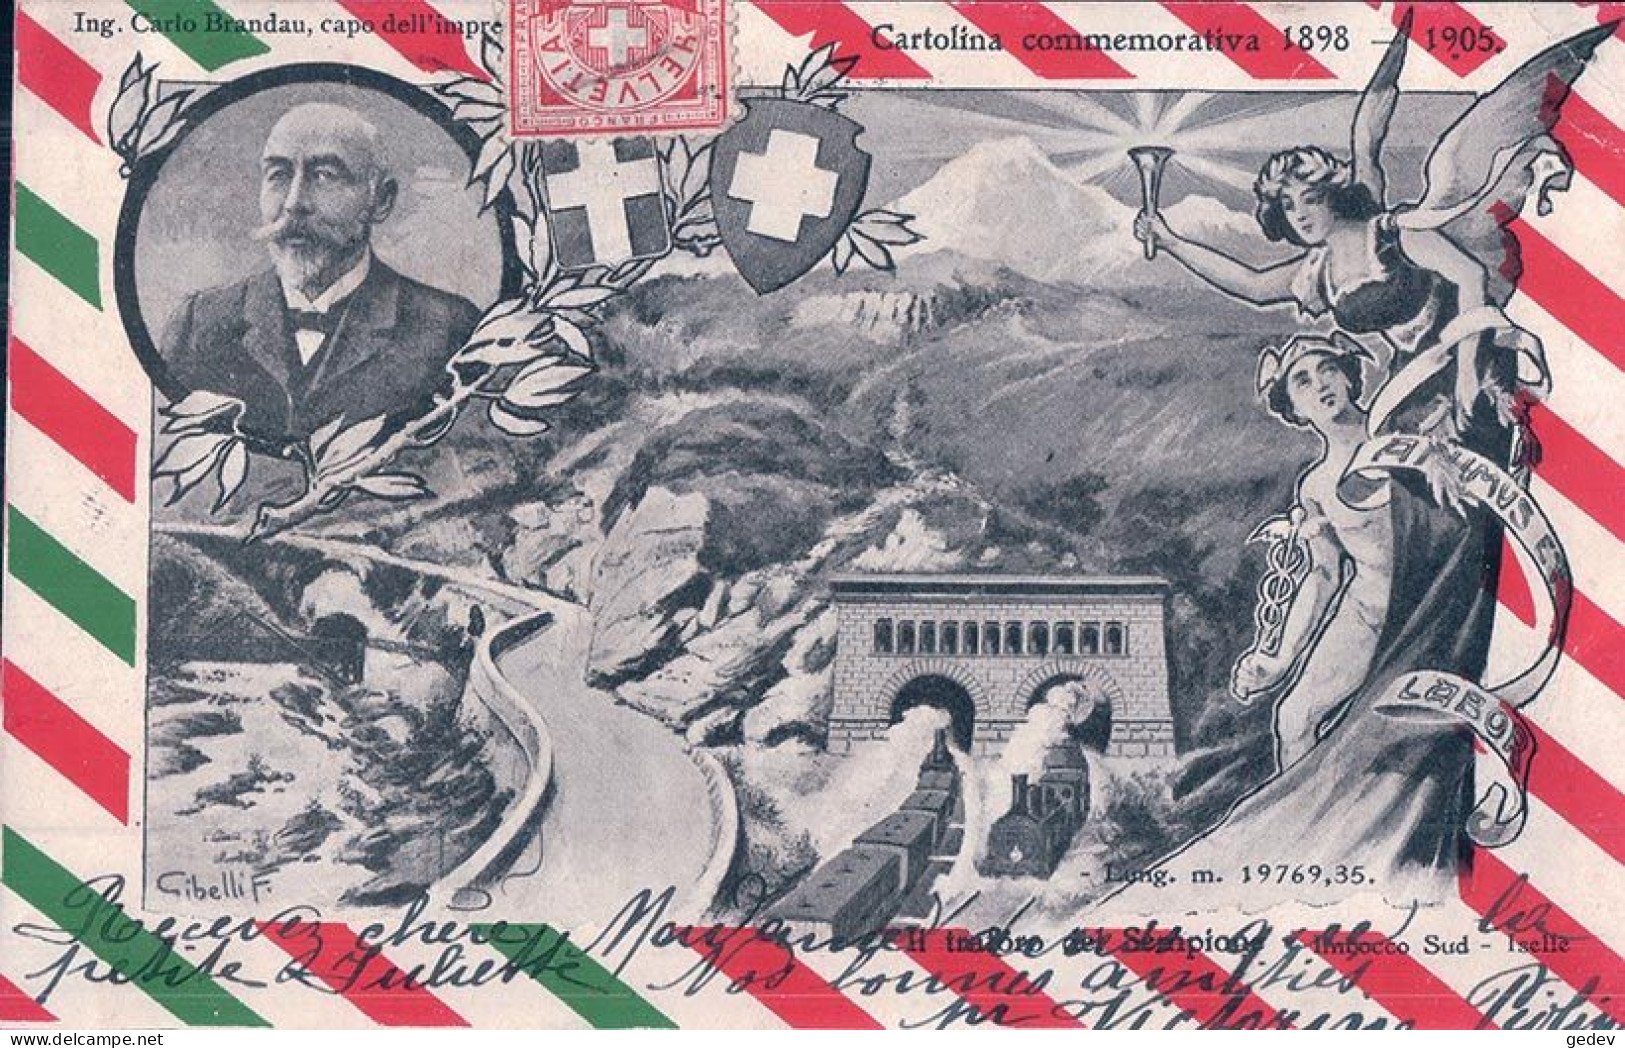 Cartolina Commemorativa 1898 - 1905, L Traforo Del Sempione, Imbocco Sud, Iselle, Illustrateur Gibelli F. (11.4.1905) - Ouvrages D'Art